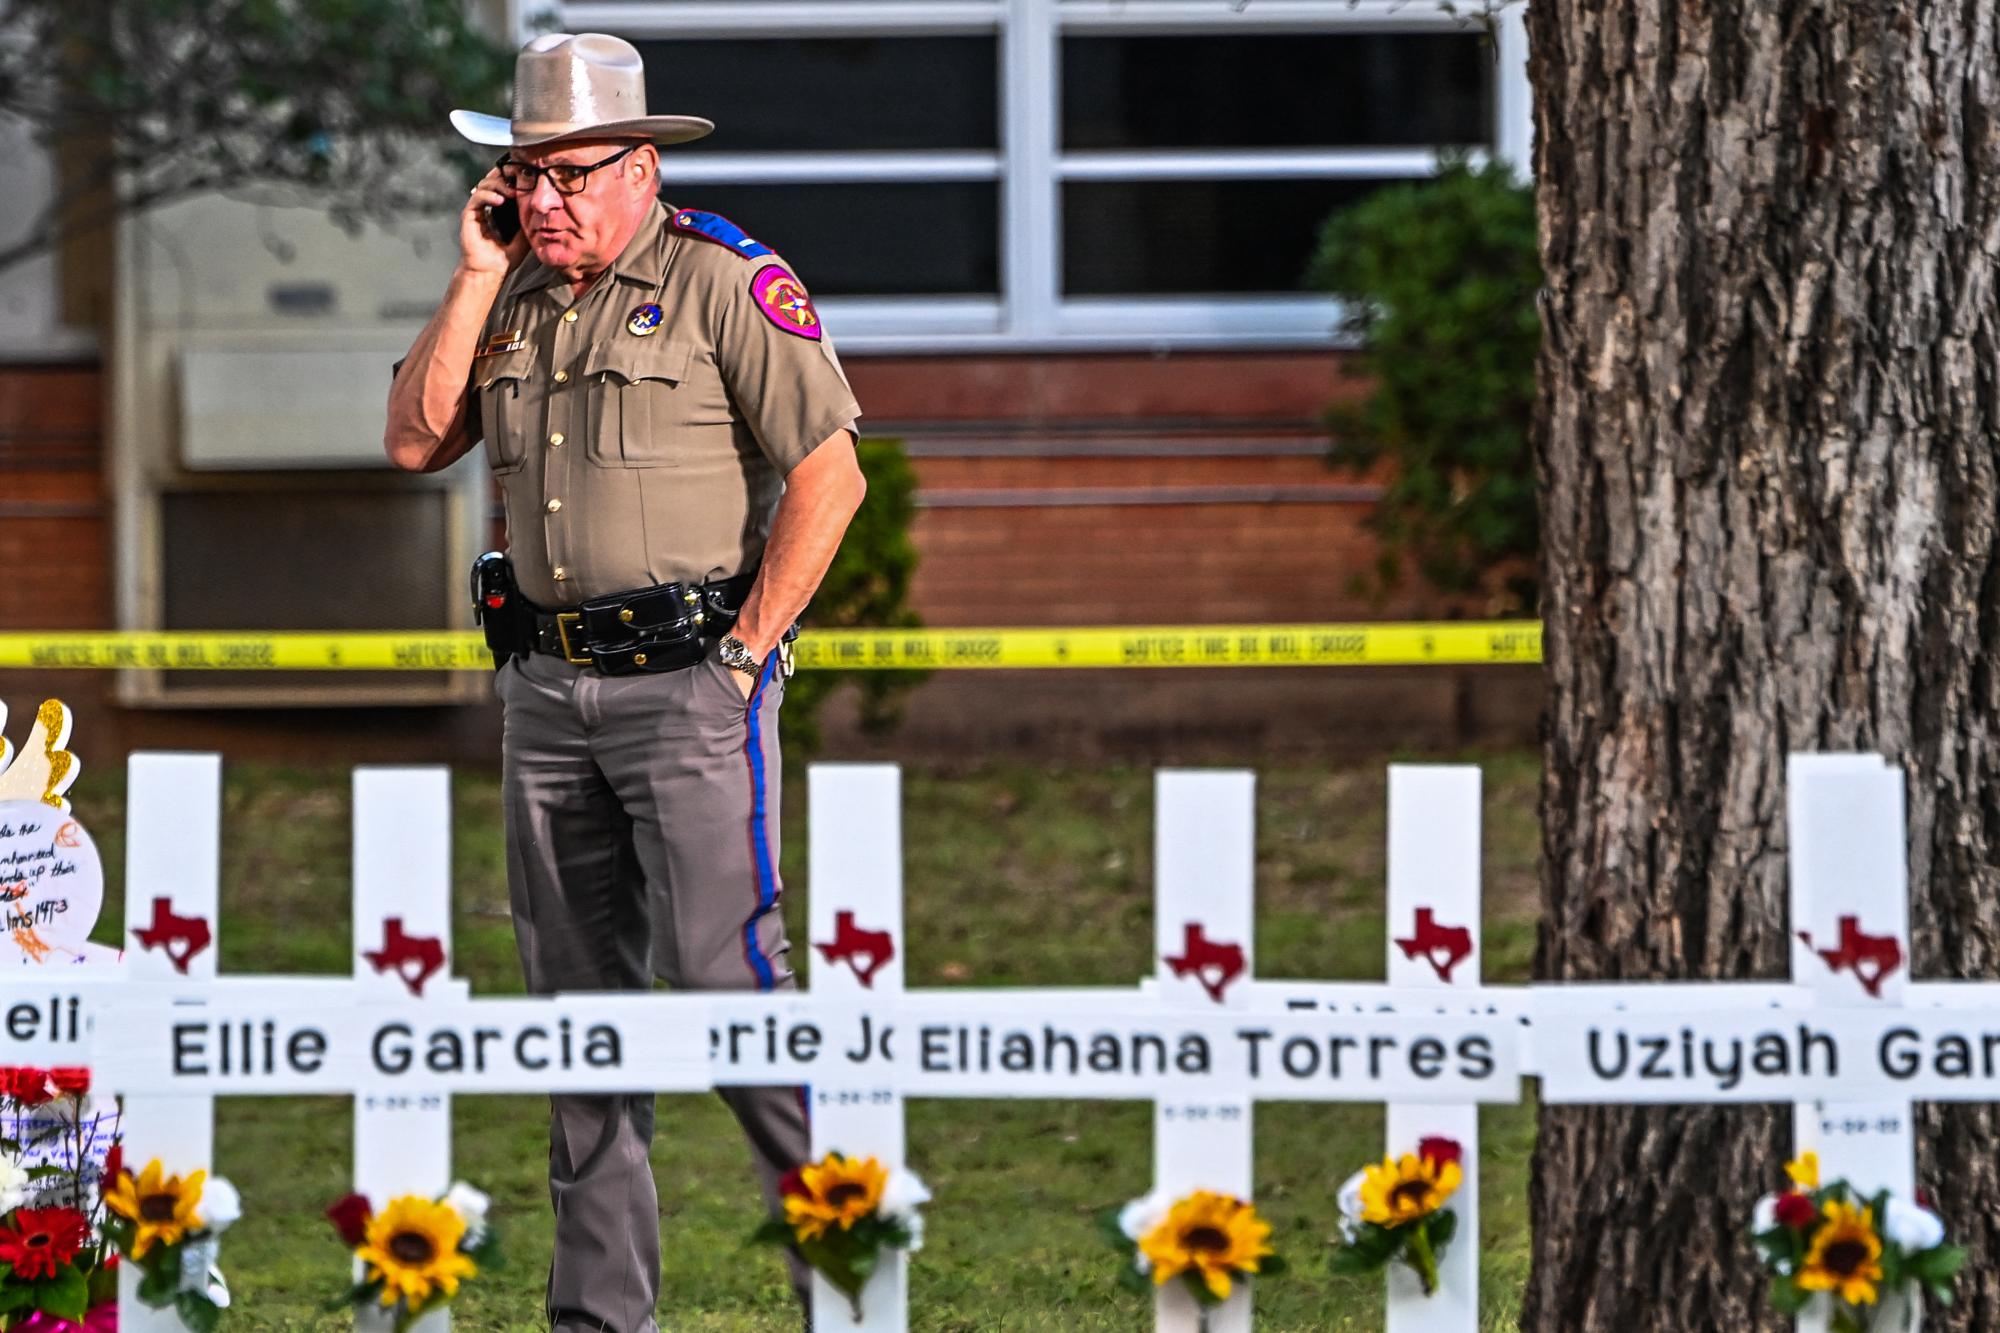 Los nombres de los niños fallecidos fueron inscritos en cruces puestas en las afueras de la escuela.